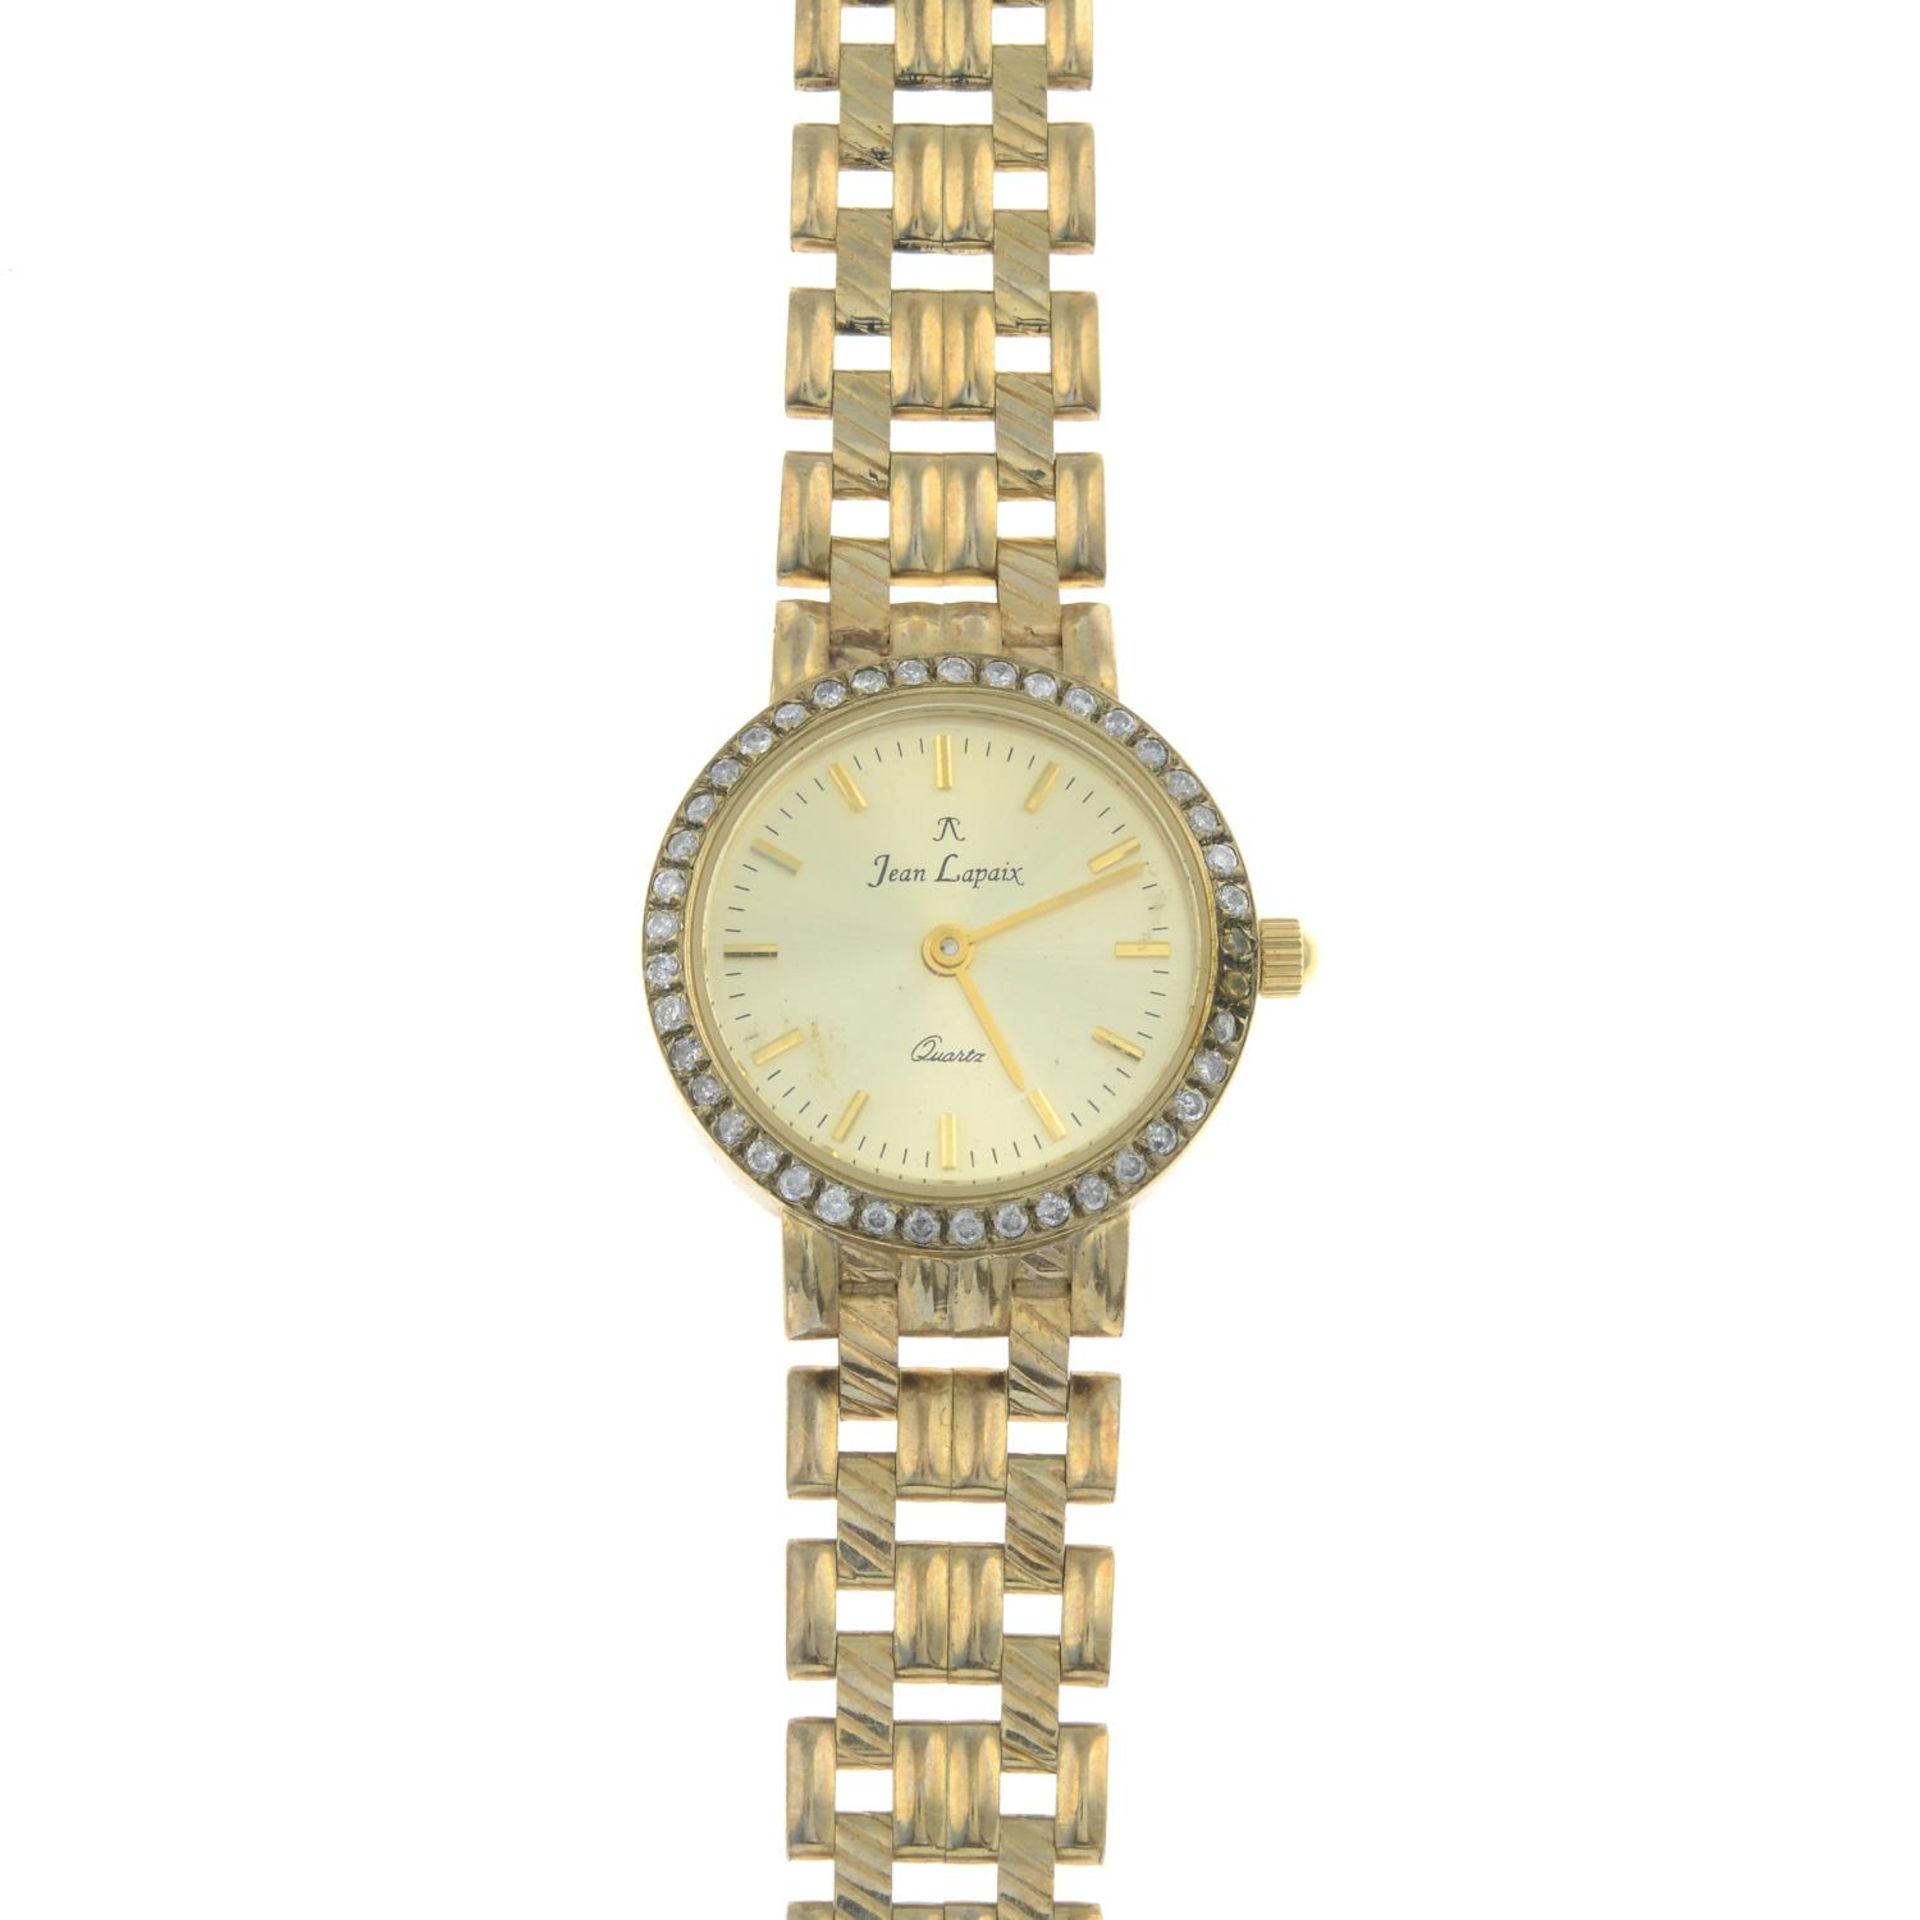 A lady's diamond wristwatch,